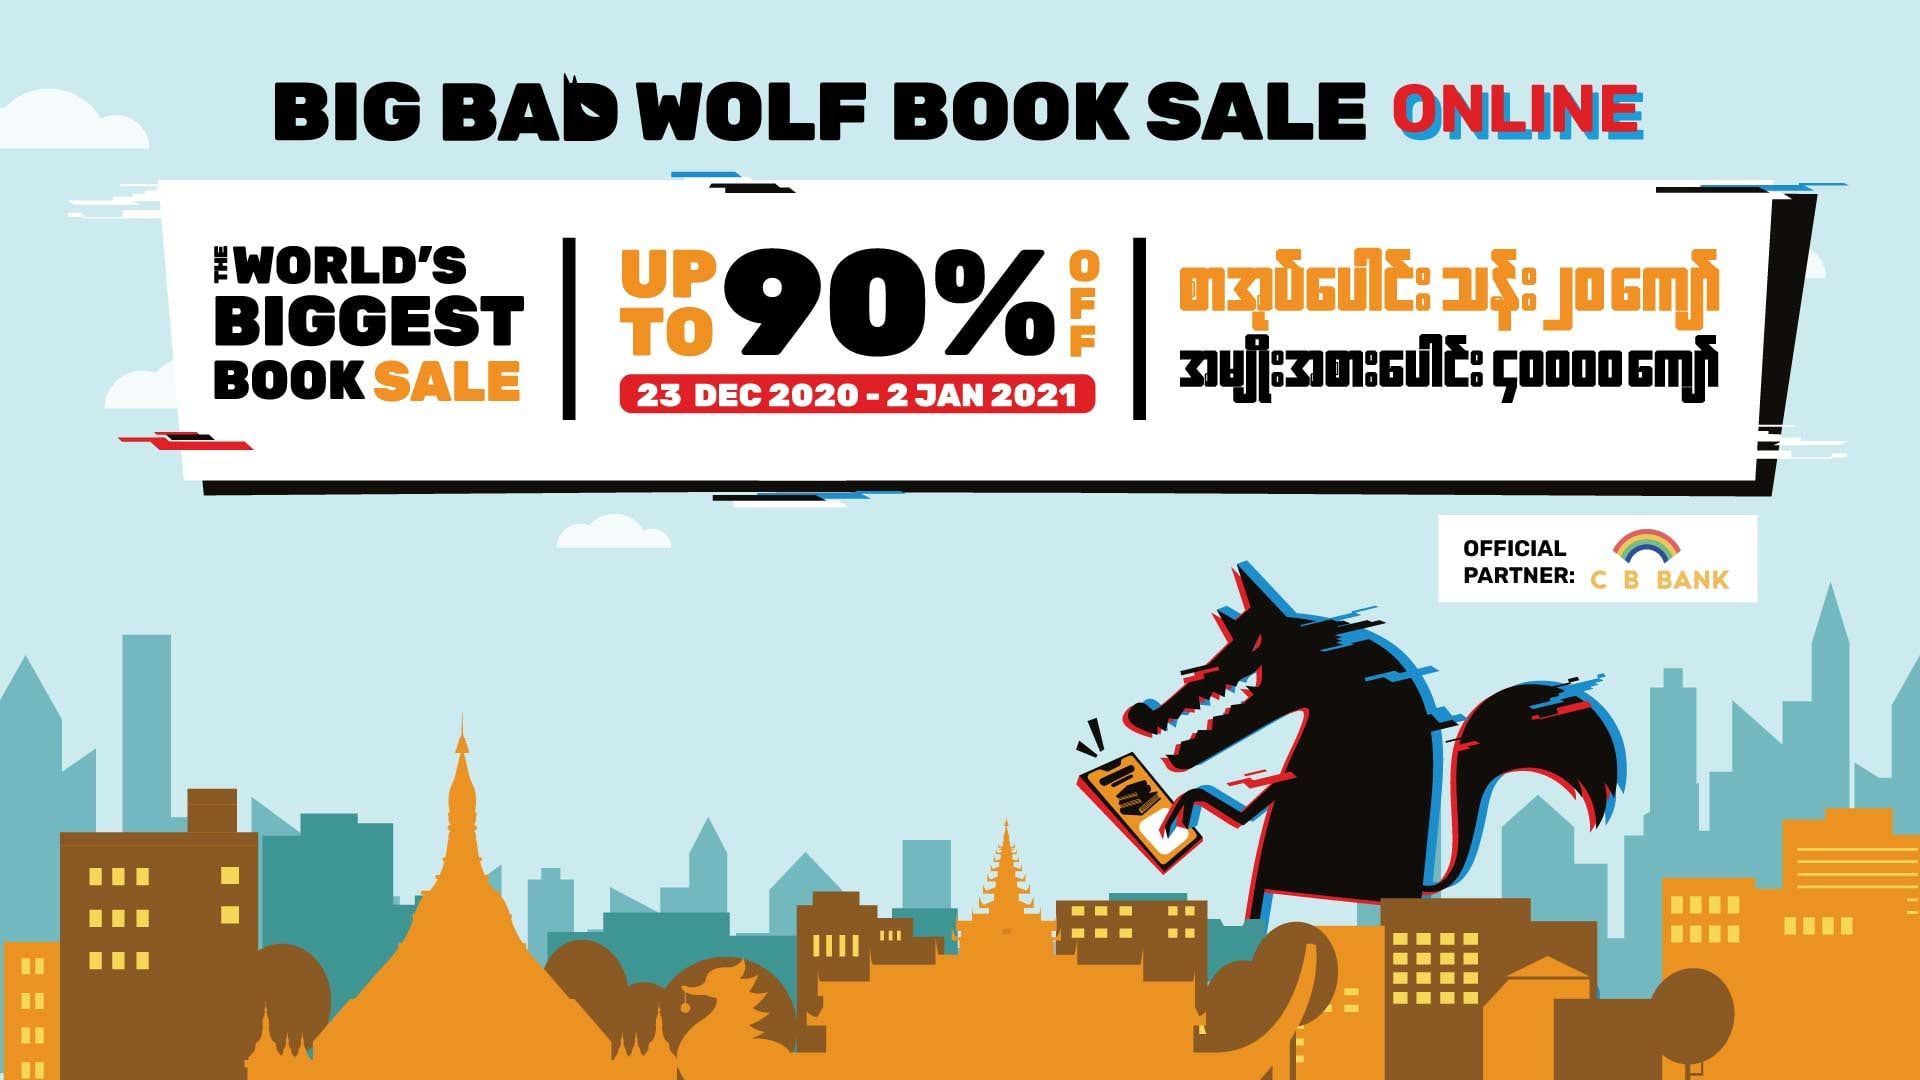 Big Bad Wolf မှ အွန်လိုင်းတွင် ပထမဆုံးအကြိမ် ကျင်းပမည့် စာအုပ်ဈေးရောင်းပွဲတော်အတွက် အစီအစဉ်များနှင့် အကြောင်းအရာများကို ထုတ်ပြန်ကြေညာ